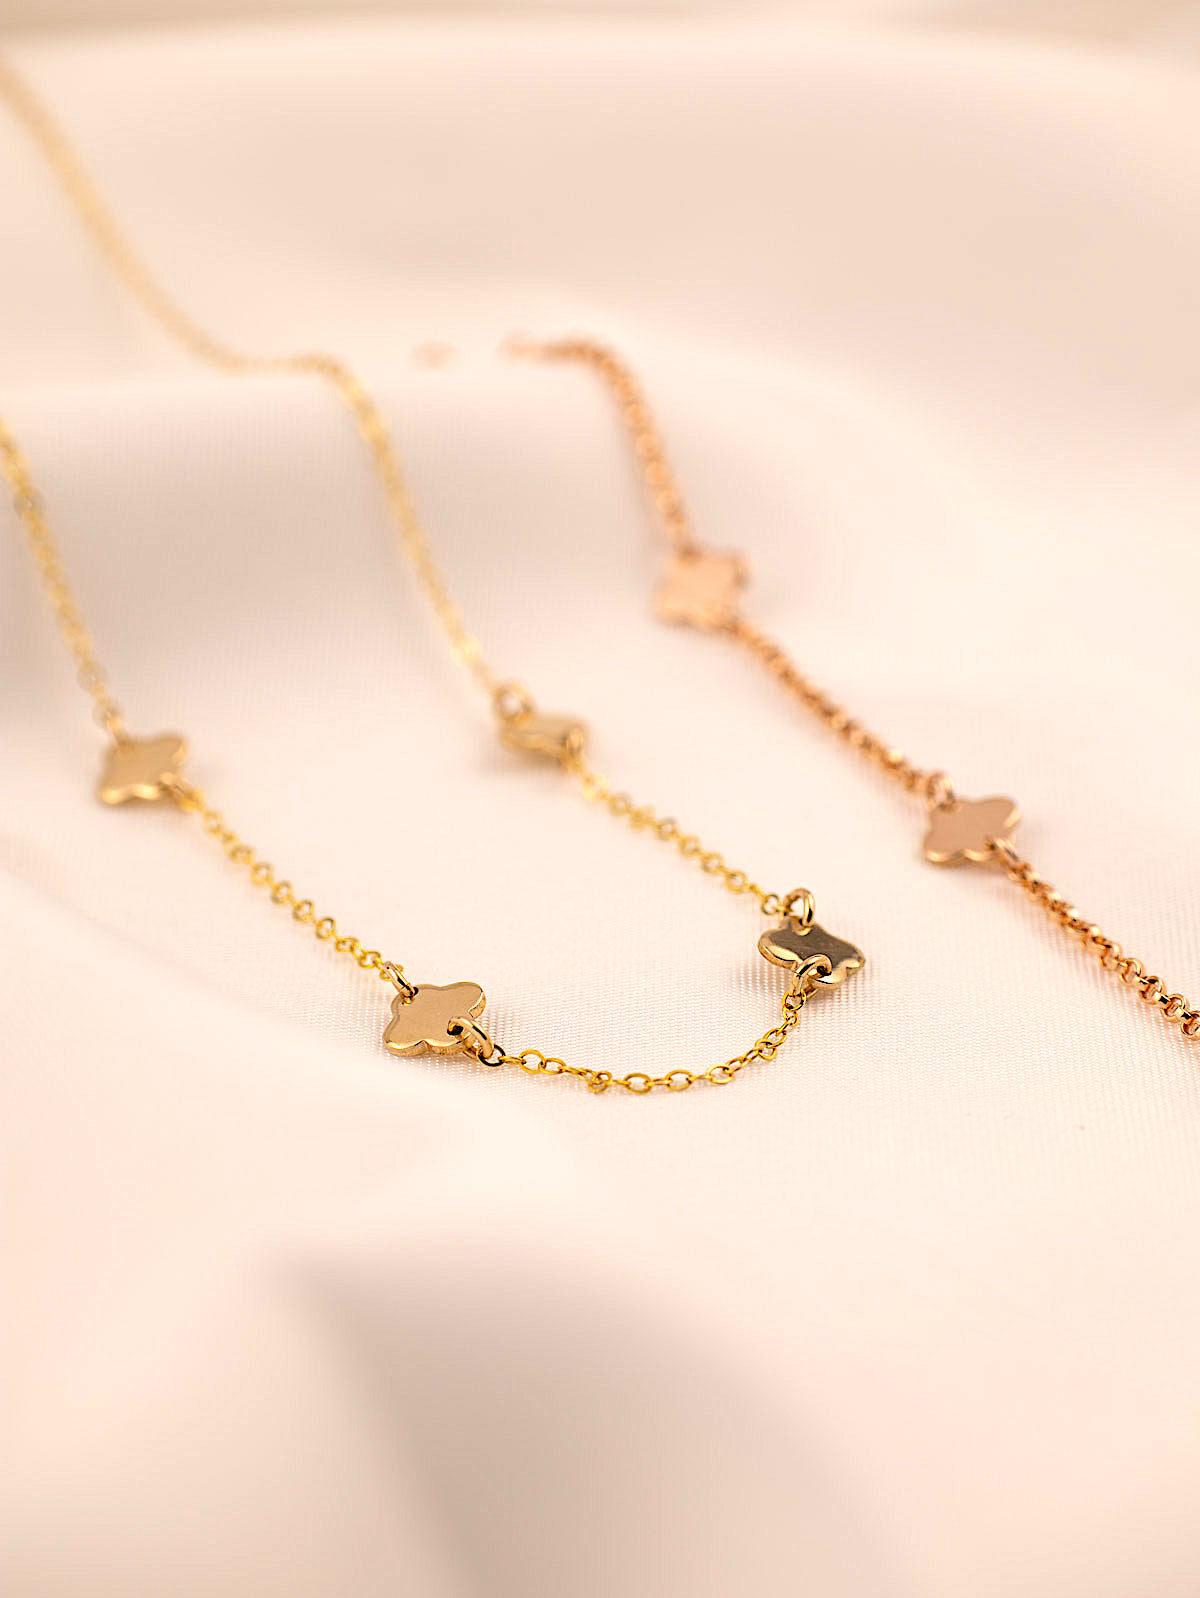 4 leaf clover pendants necklace in gold with bracelet rose gold